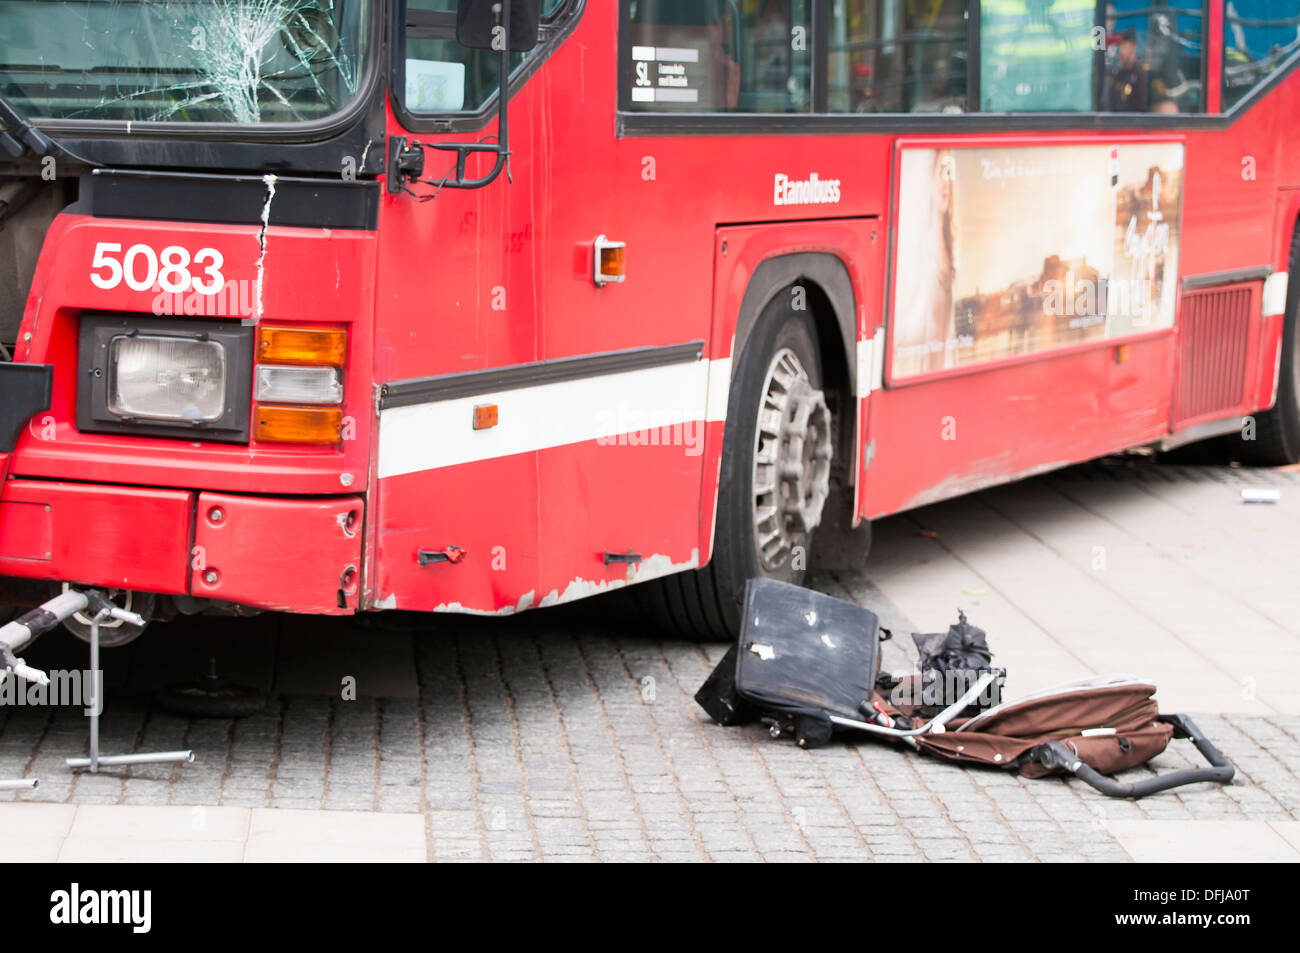 Bus accident Stock Photo